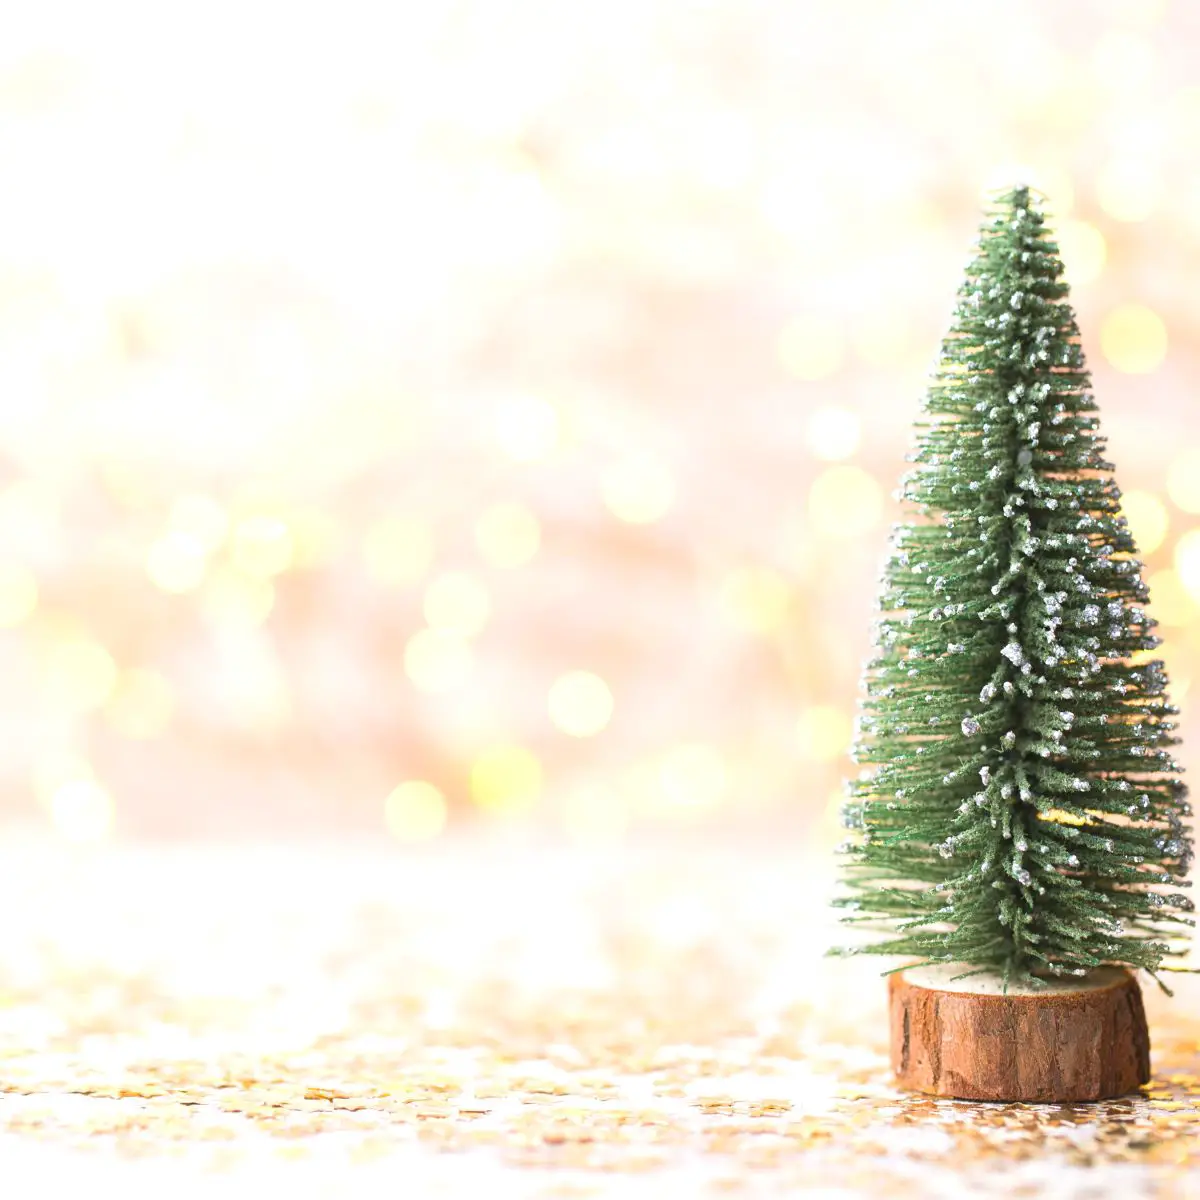 Startbild für Weihnachtsquiz. Kleiner Tannenbaum in Sternenkonfetti.